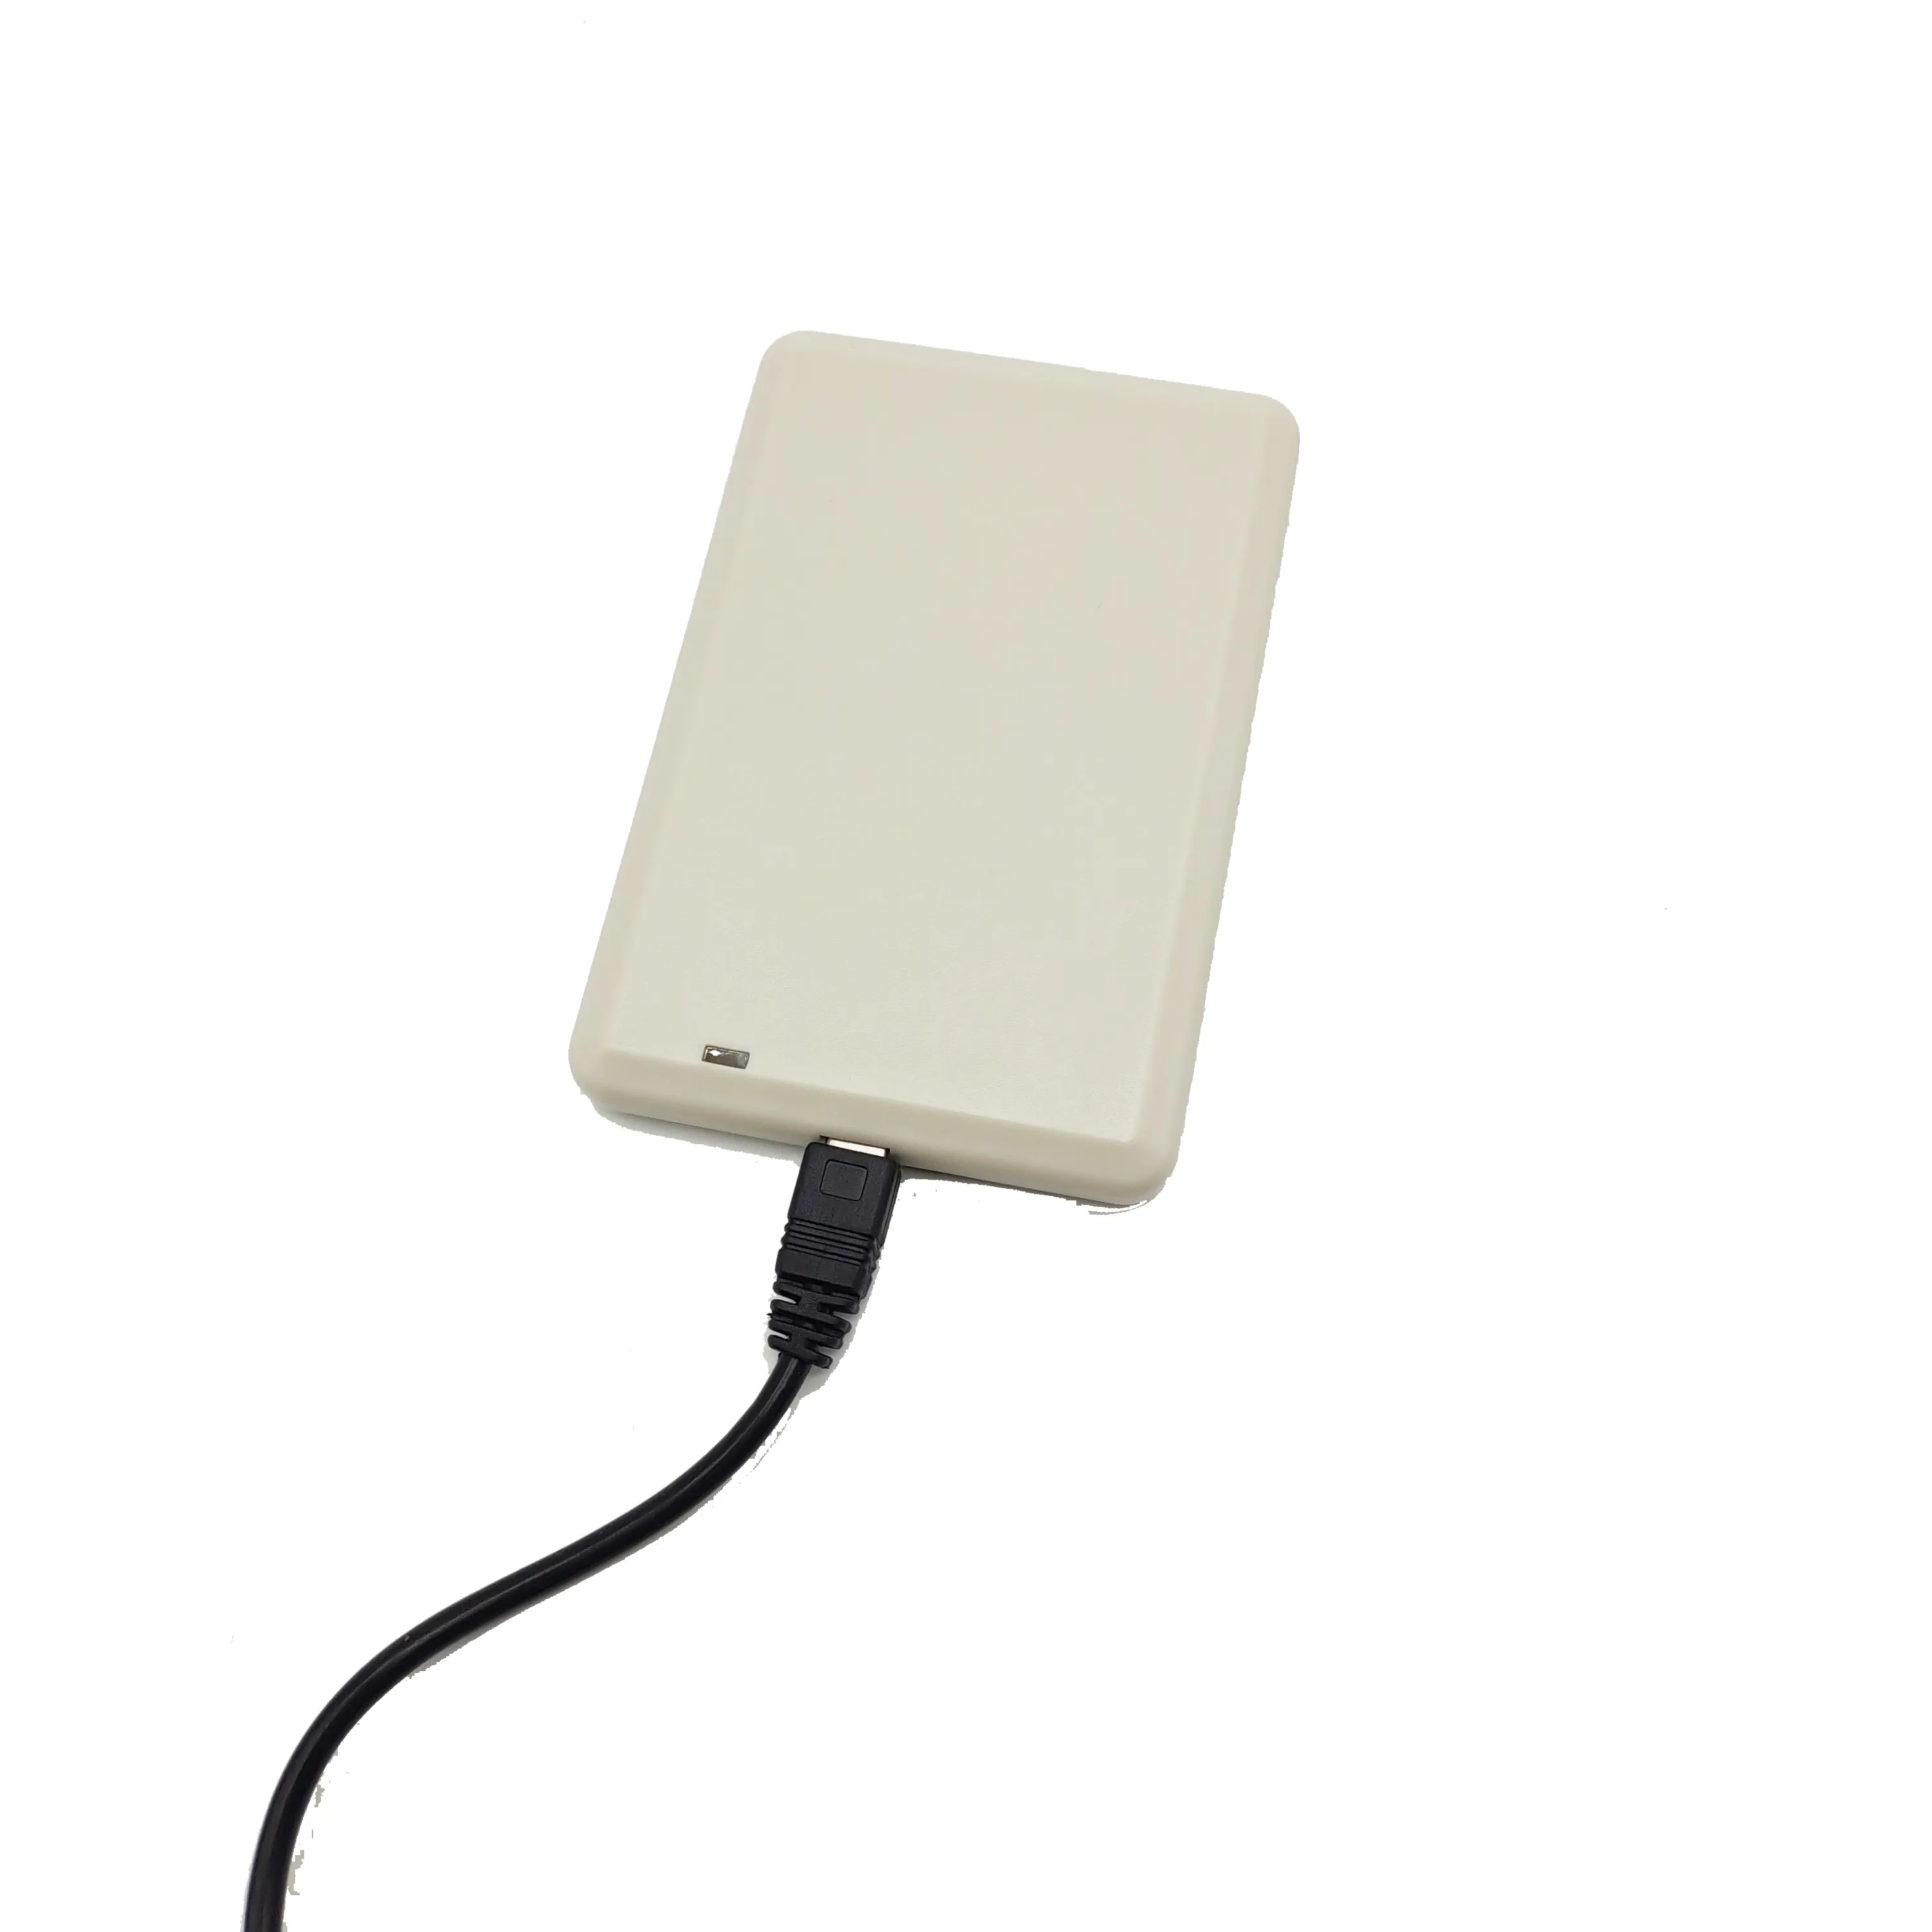 UHF RFID okuyucu kart okuyucu ve yazıcı makinesi USB masaüstü 860-960mhz isteğe bağlı kart yazıcı makinesi yazılım ile